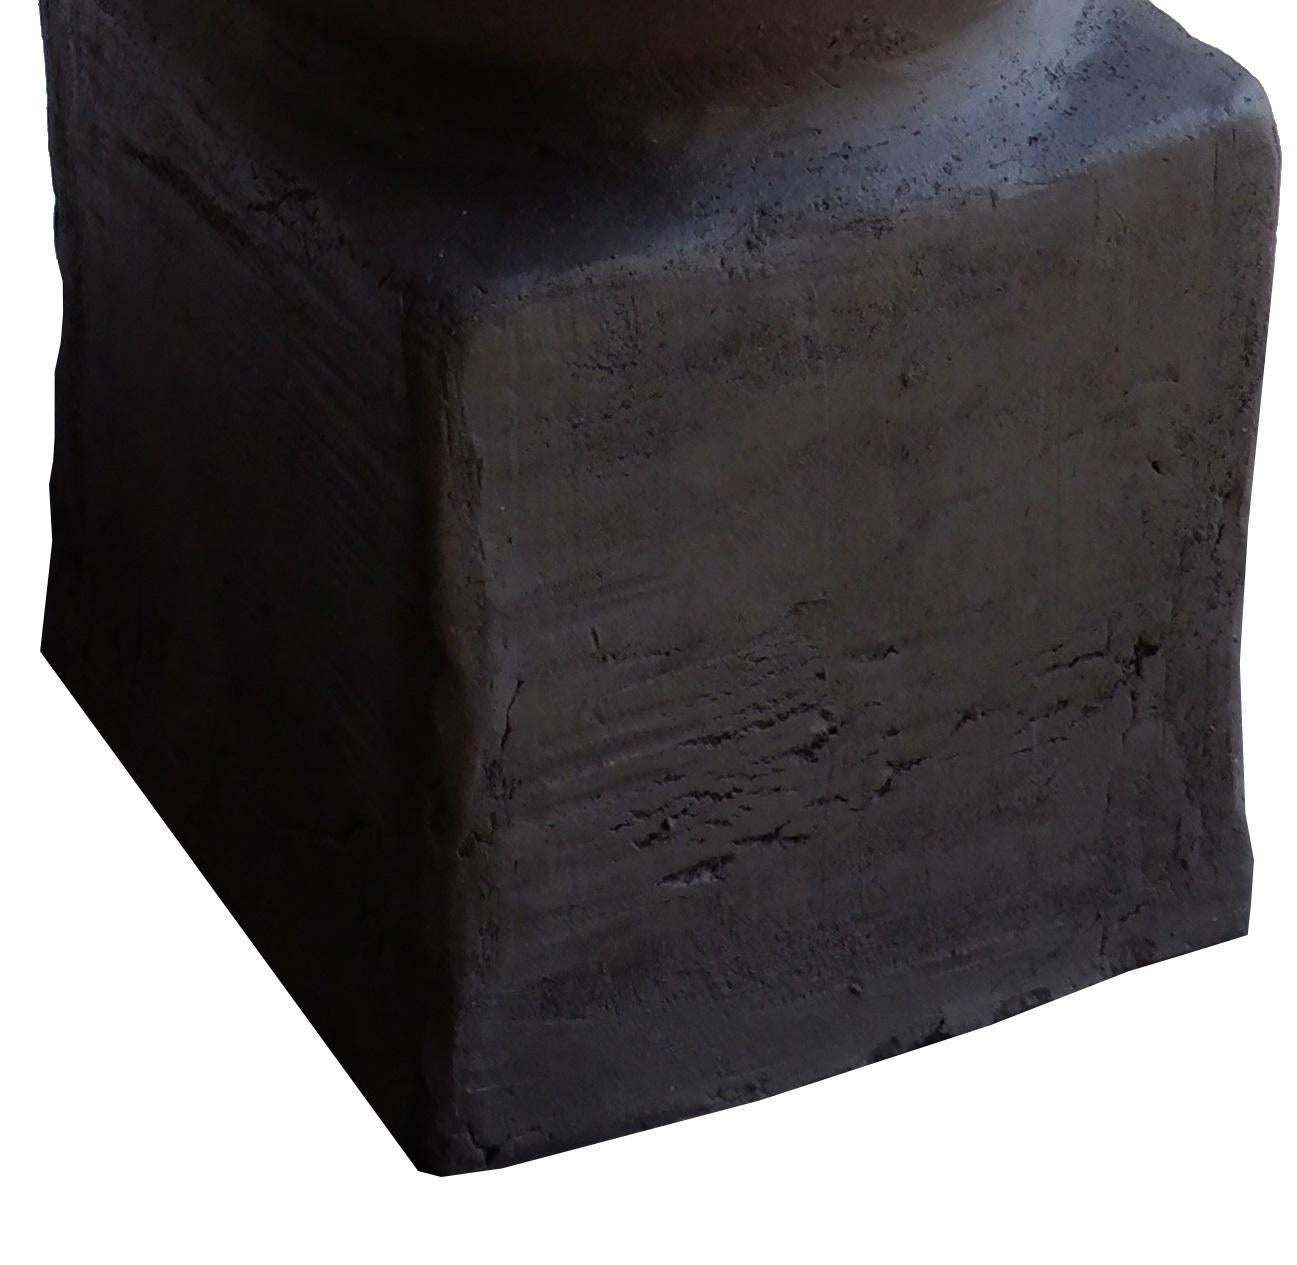 Rous Tischleuchte von Ia Kutateladze
Einzigartig.
Abmessungen: Ø 18 x H 42 cm.
MATERIALIEN: Lehm.

Jedes Stück ist ein Unikat, da es in freier Handarbeit hergestellt wird. Verschiedene Farbvarianten erhältlich: roher schwarzer Ton, roher weißer Ton